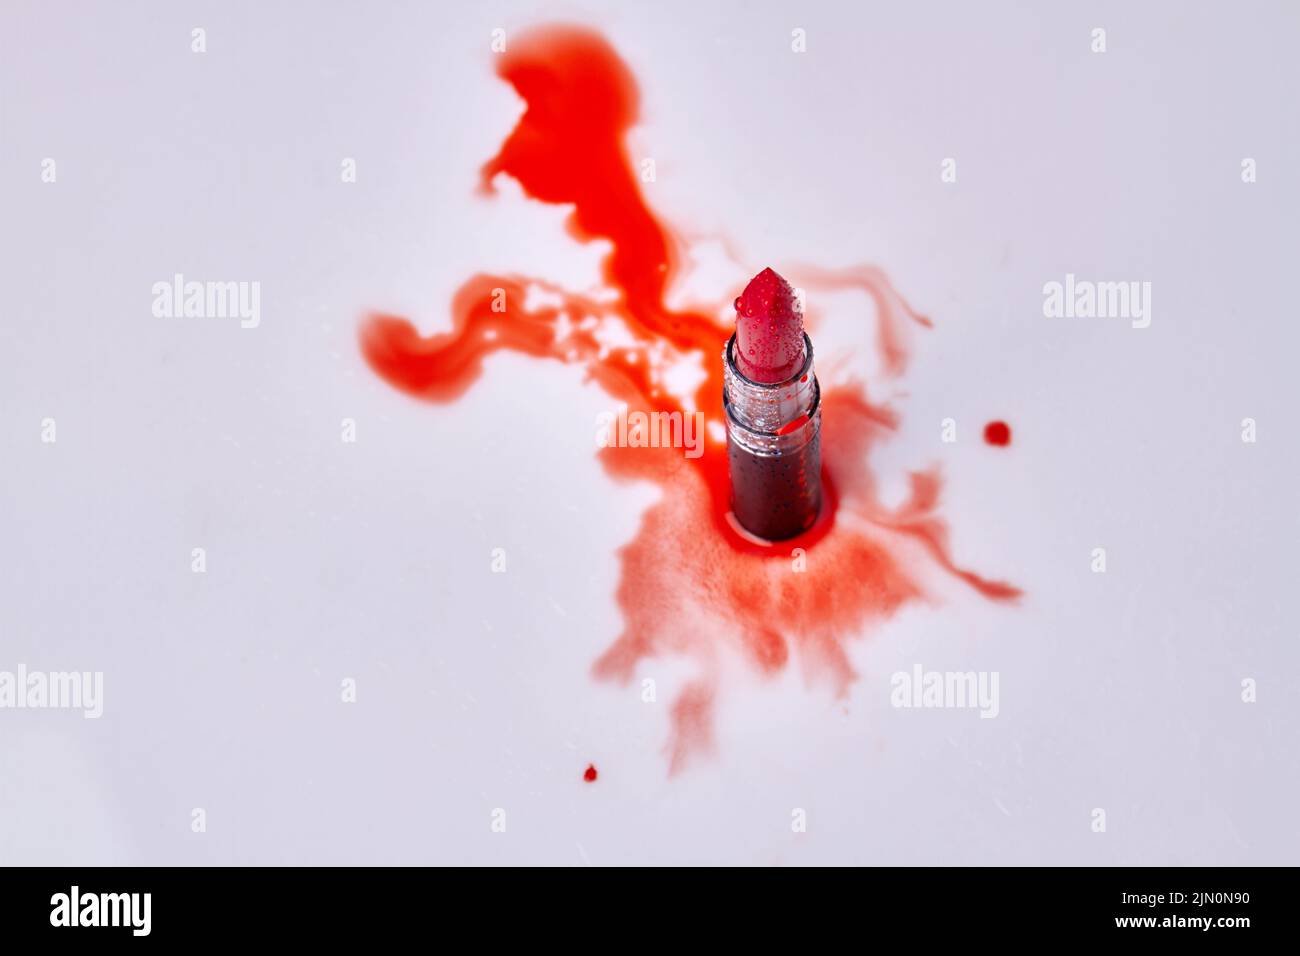 Vista superior del lápiz labial rojo con gotas de agua. Manchas rojas sobre fondo blanco. Foto de stock